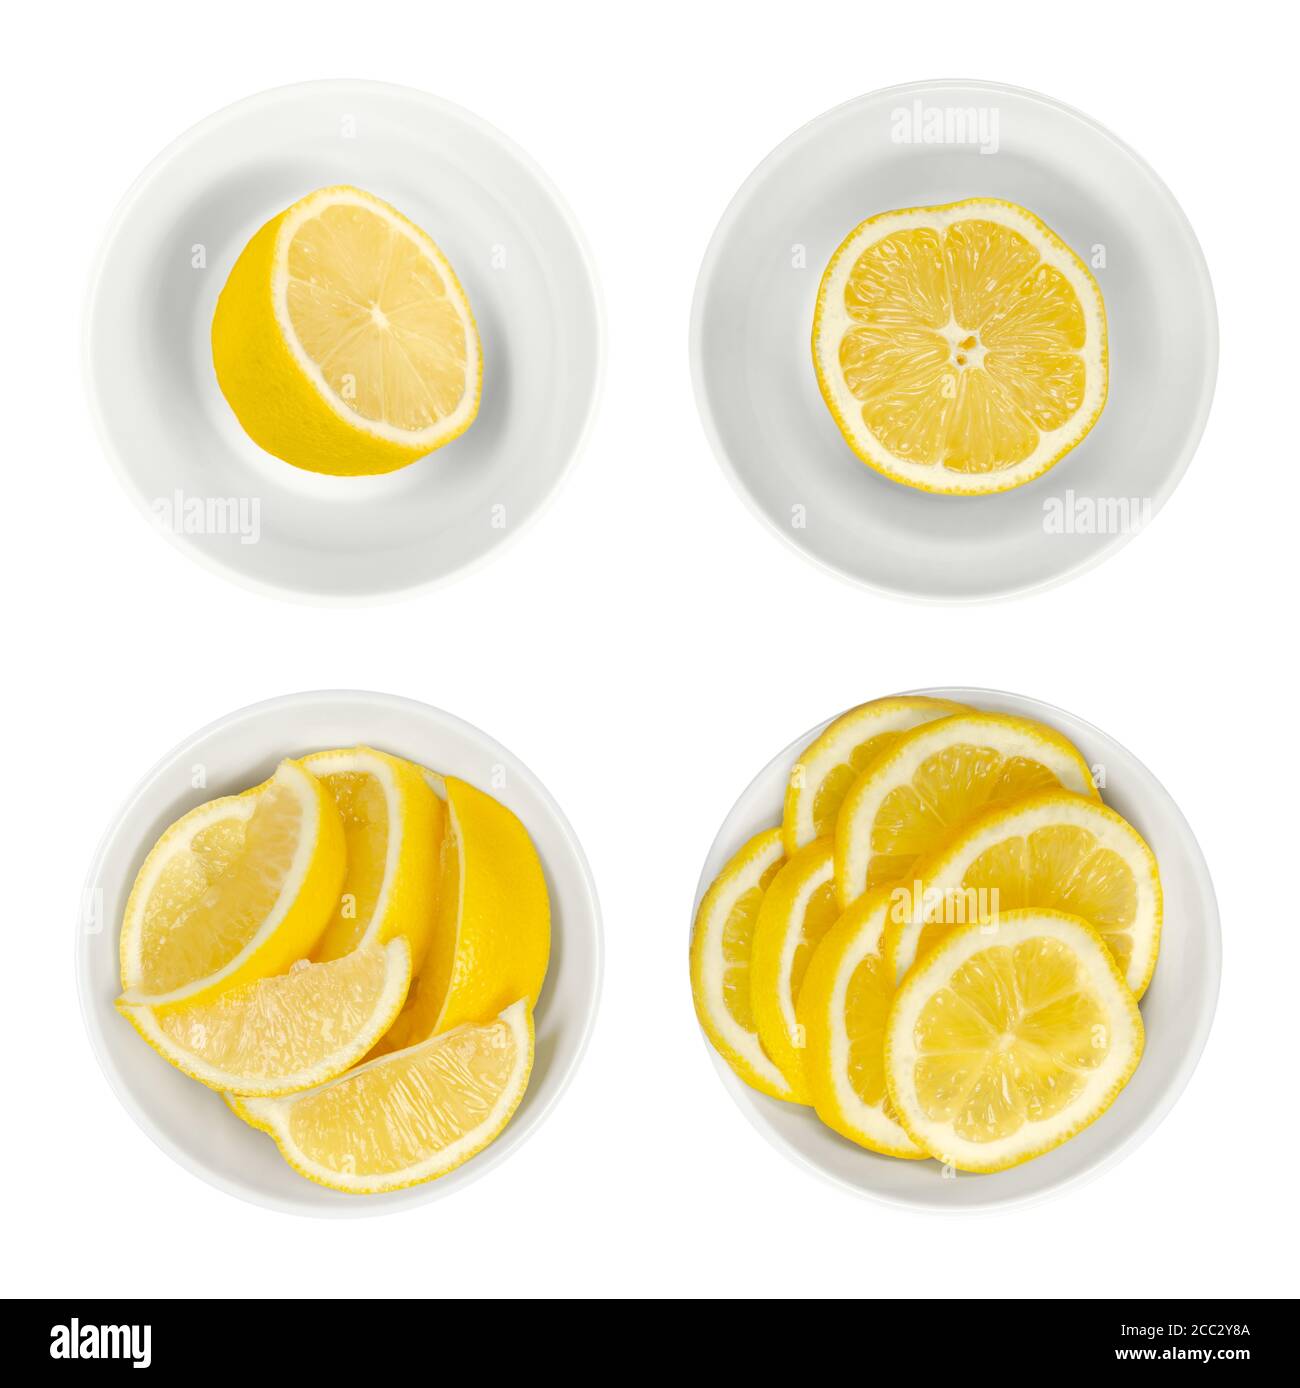 Zitronen in weißen Glasschalen. Frisch geschnittene Zitronenhälften, Keile und Scheiben. Reife und gelbe Zitrusfrüchte, für kulinarische Zwecke verwendet. Citrus limon. Stockfoto